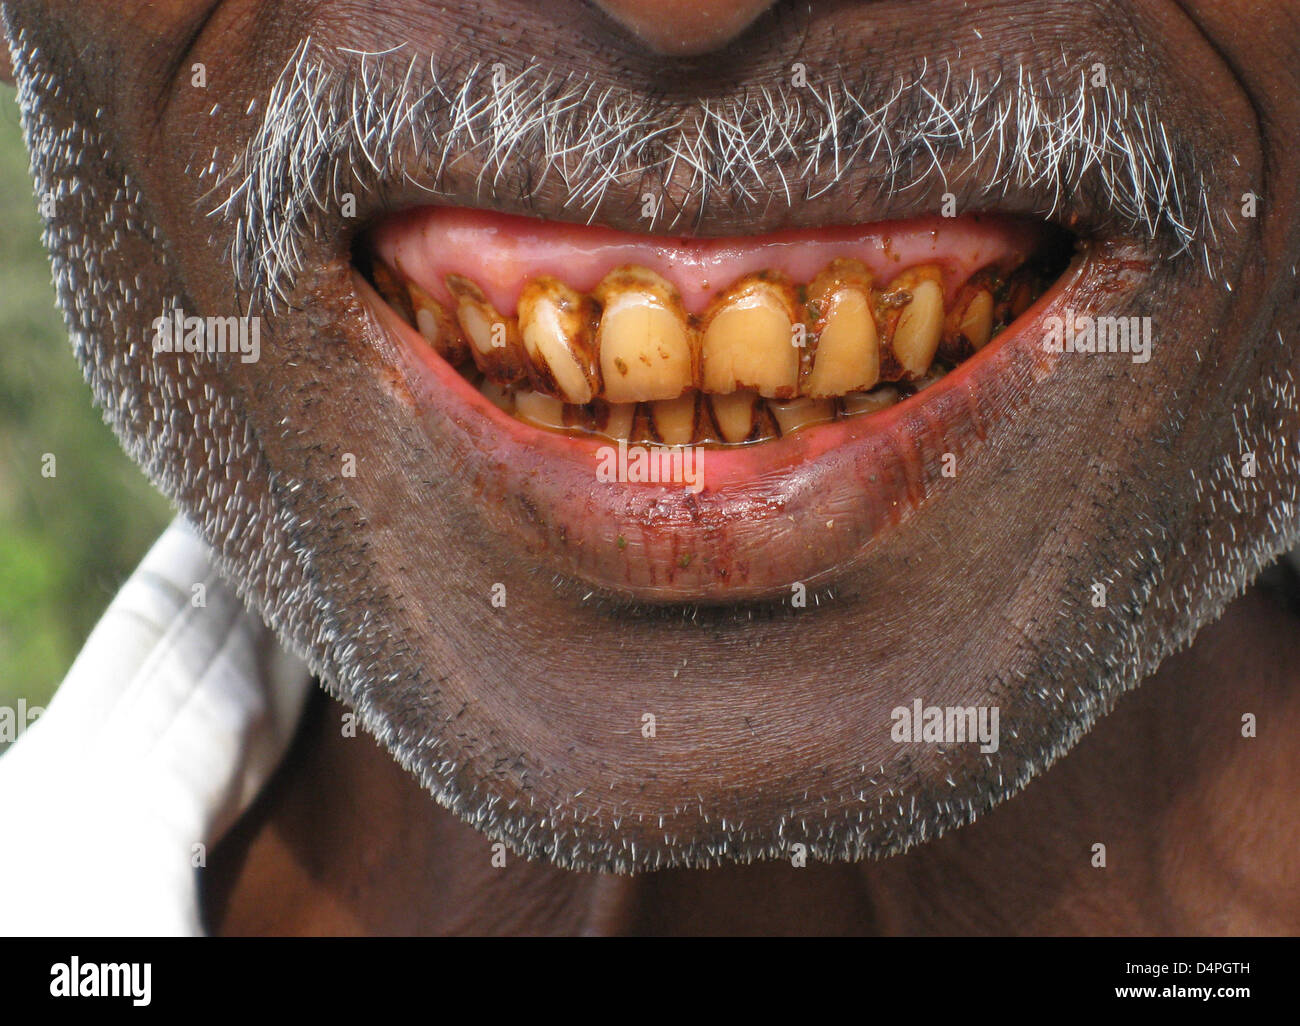 (Dpa) file di un file immagine datata 23 febbraio 2008 visualizza i denti di un uomo avente comsumed noci di betel in Ella, Sri Lanka. Noci di betel sono un tipo molto diffuso di indulgenza del cibo con un effetto stimolante, ancora estremamente dannosi per la mucosa orale e dei denti. Foto: Rolf Haid Foto Stock